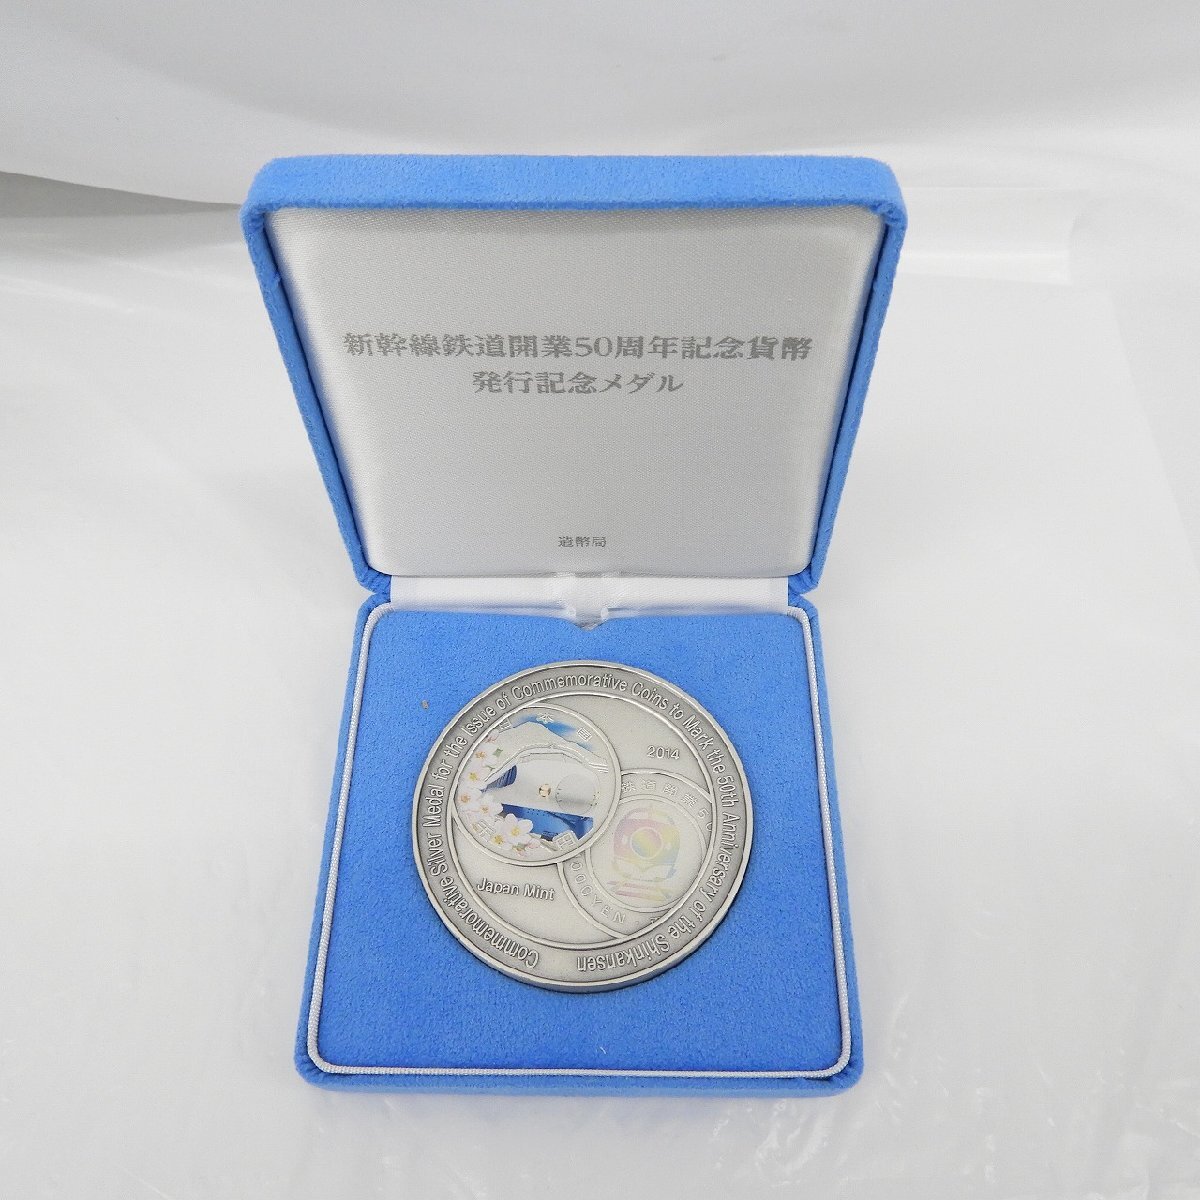 【記念メダル】新幹線鉄道開業50周年記念貨幣発行記念メダル 165.4g 箱付 807117328 0413の画像2